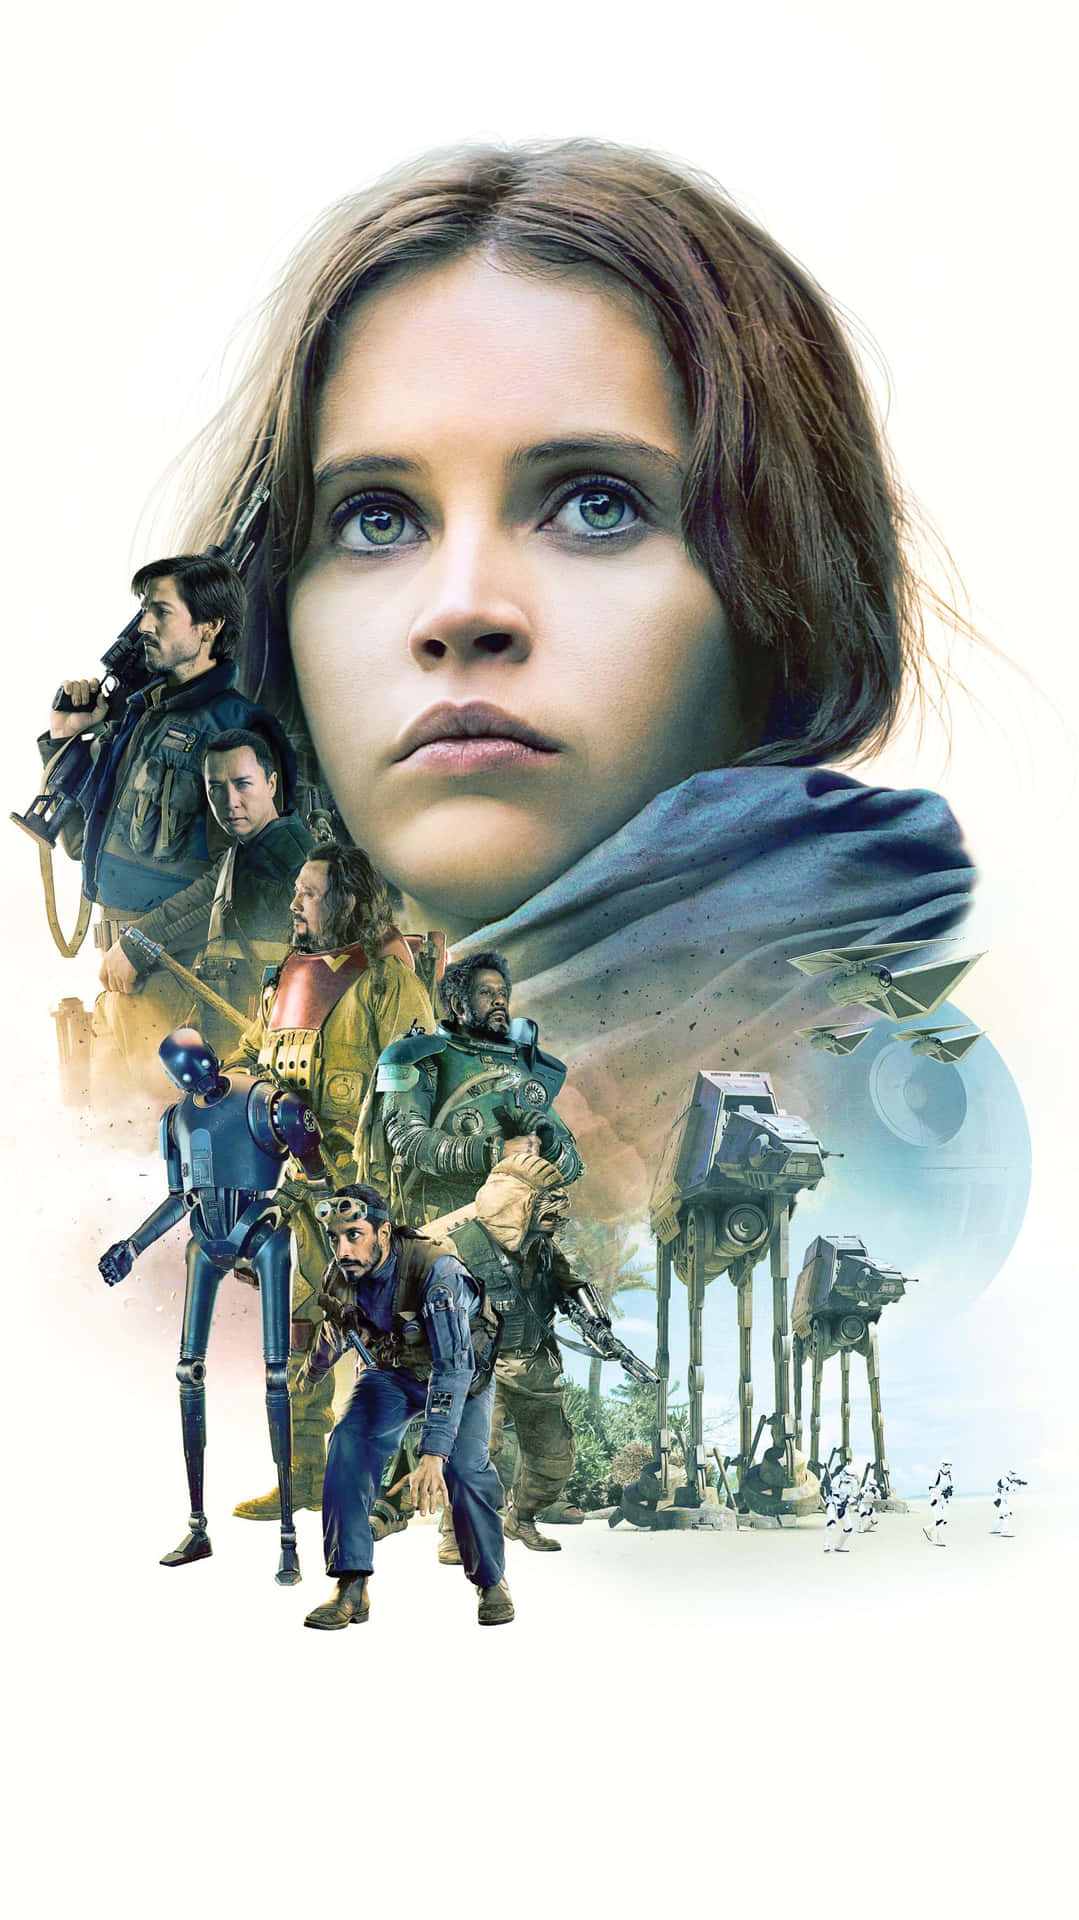 Dierebellion Schließt Sich In Dem Kommenden Film Rogue One: A Star Wars Story Zusammen. Wallpaper